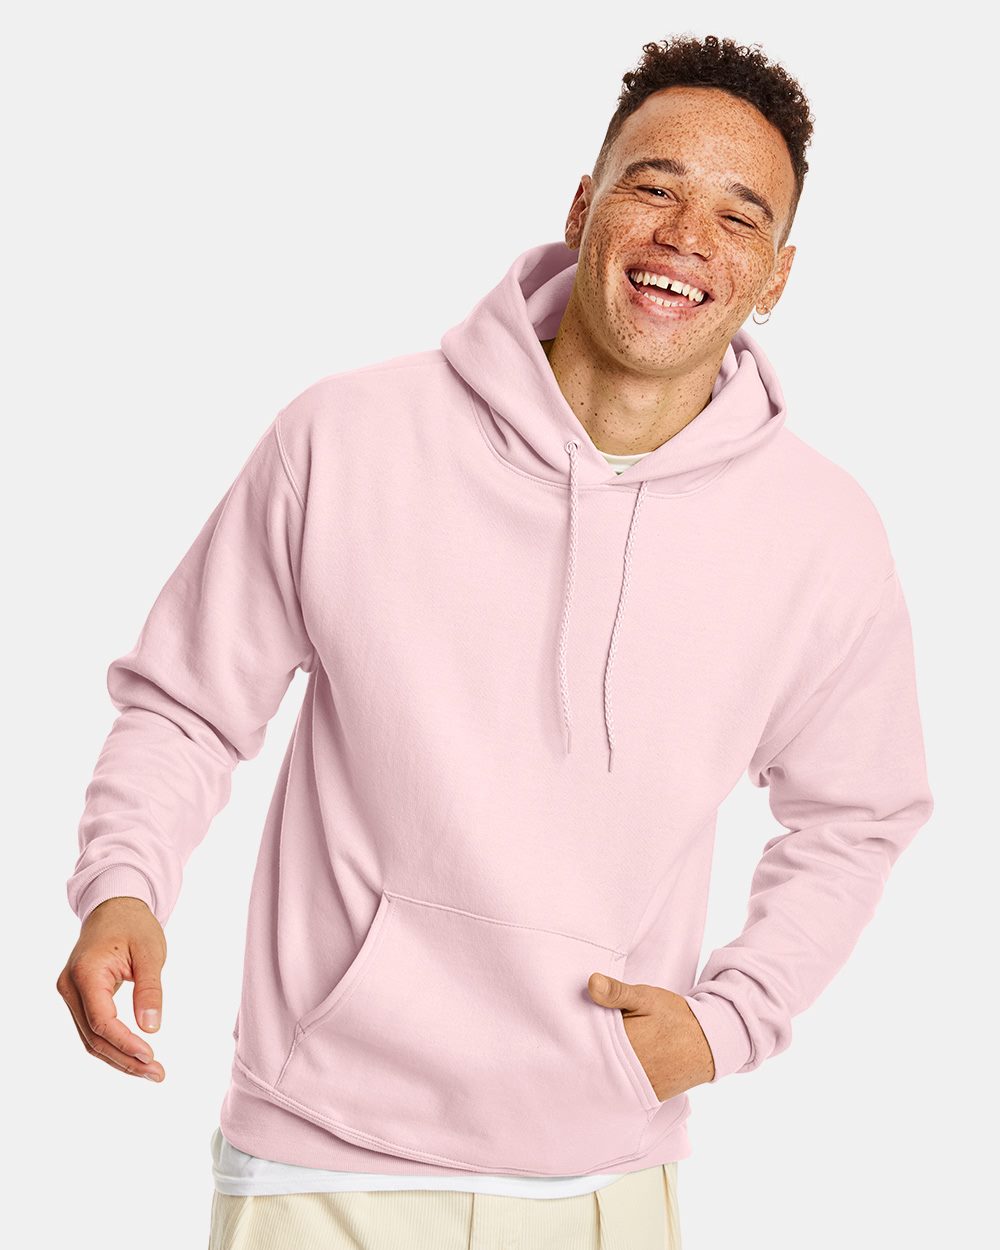 Hanes EcoSmart Hooded Sweatshirt, Customized Sweatshirts